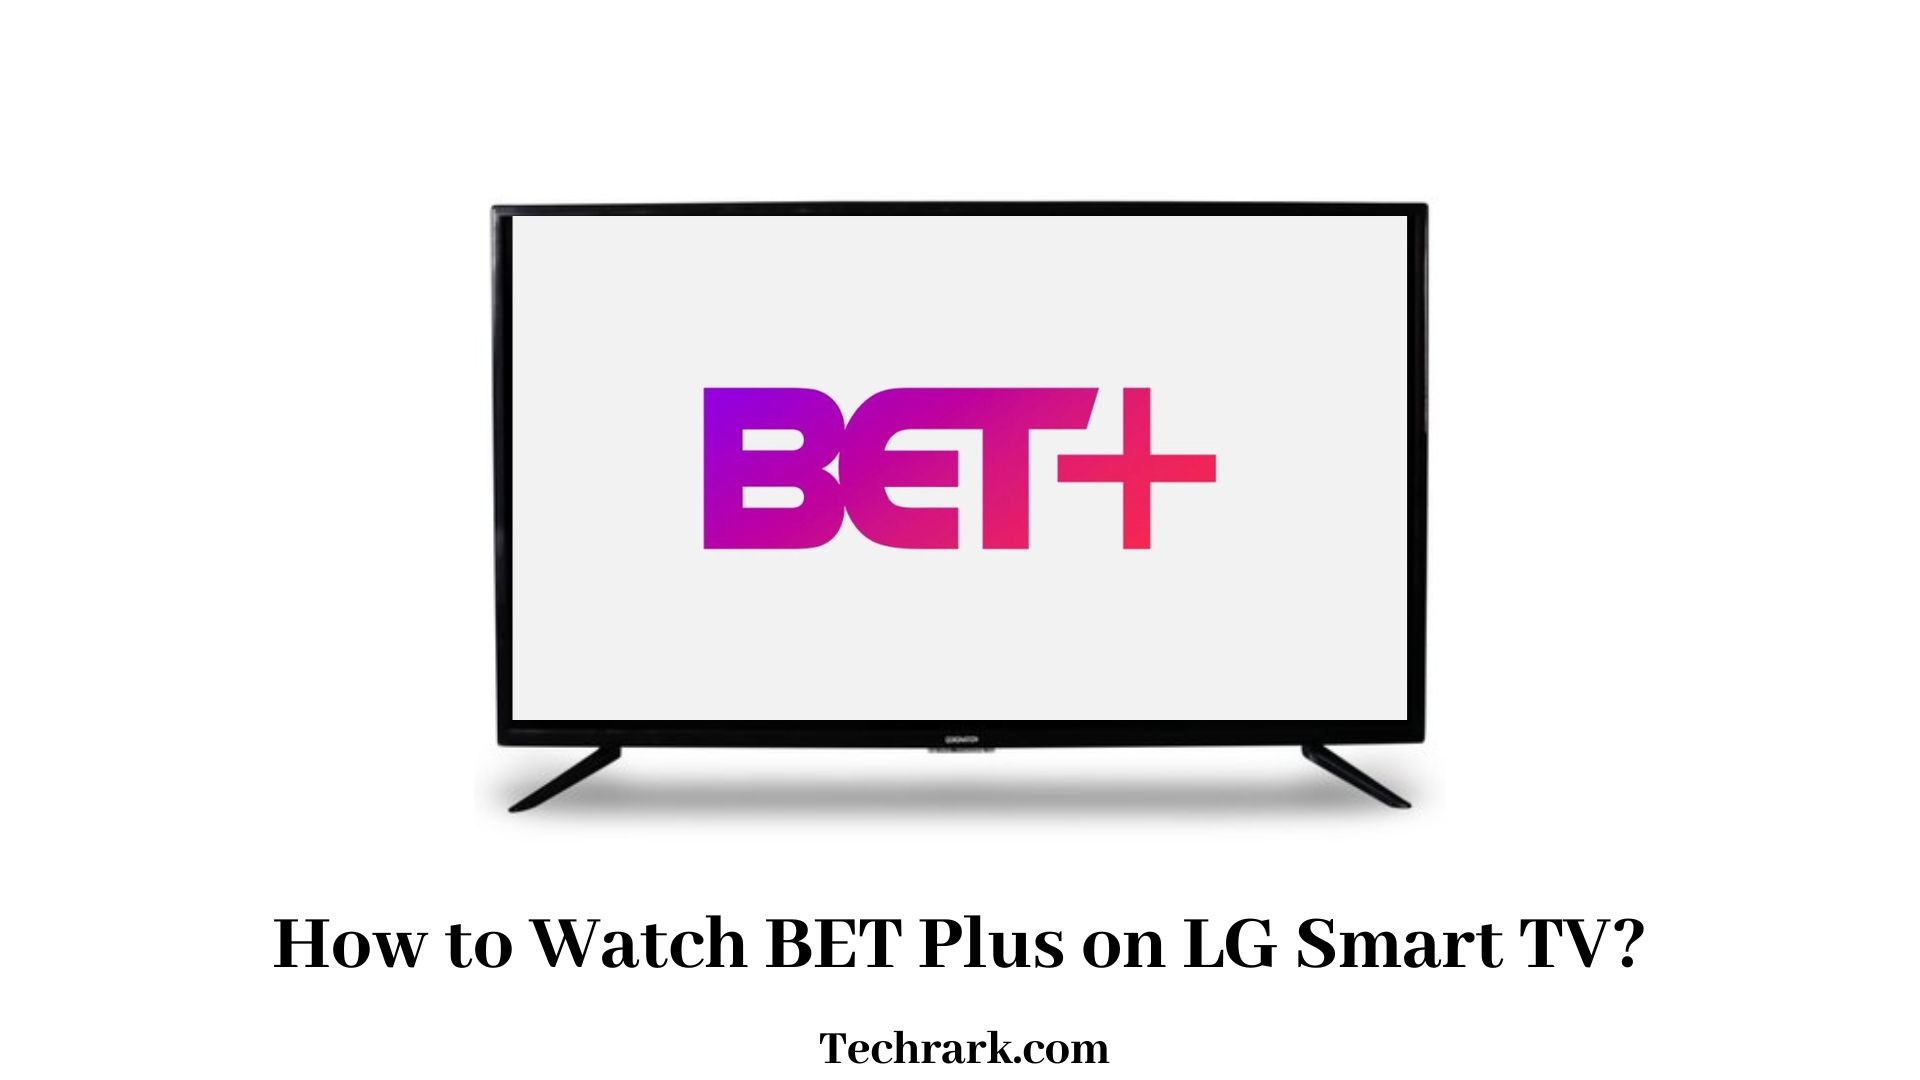 BET Plus on LG Smart TV